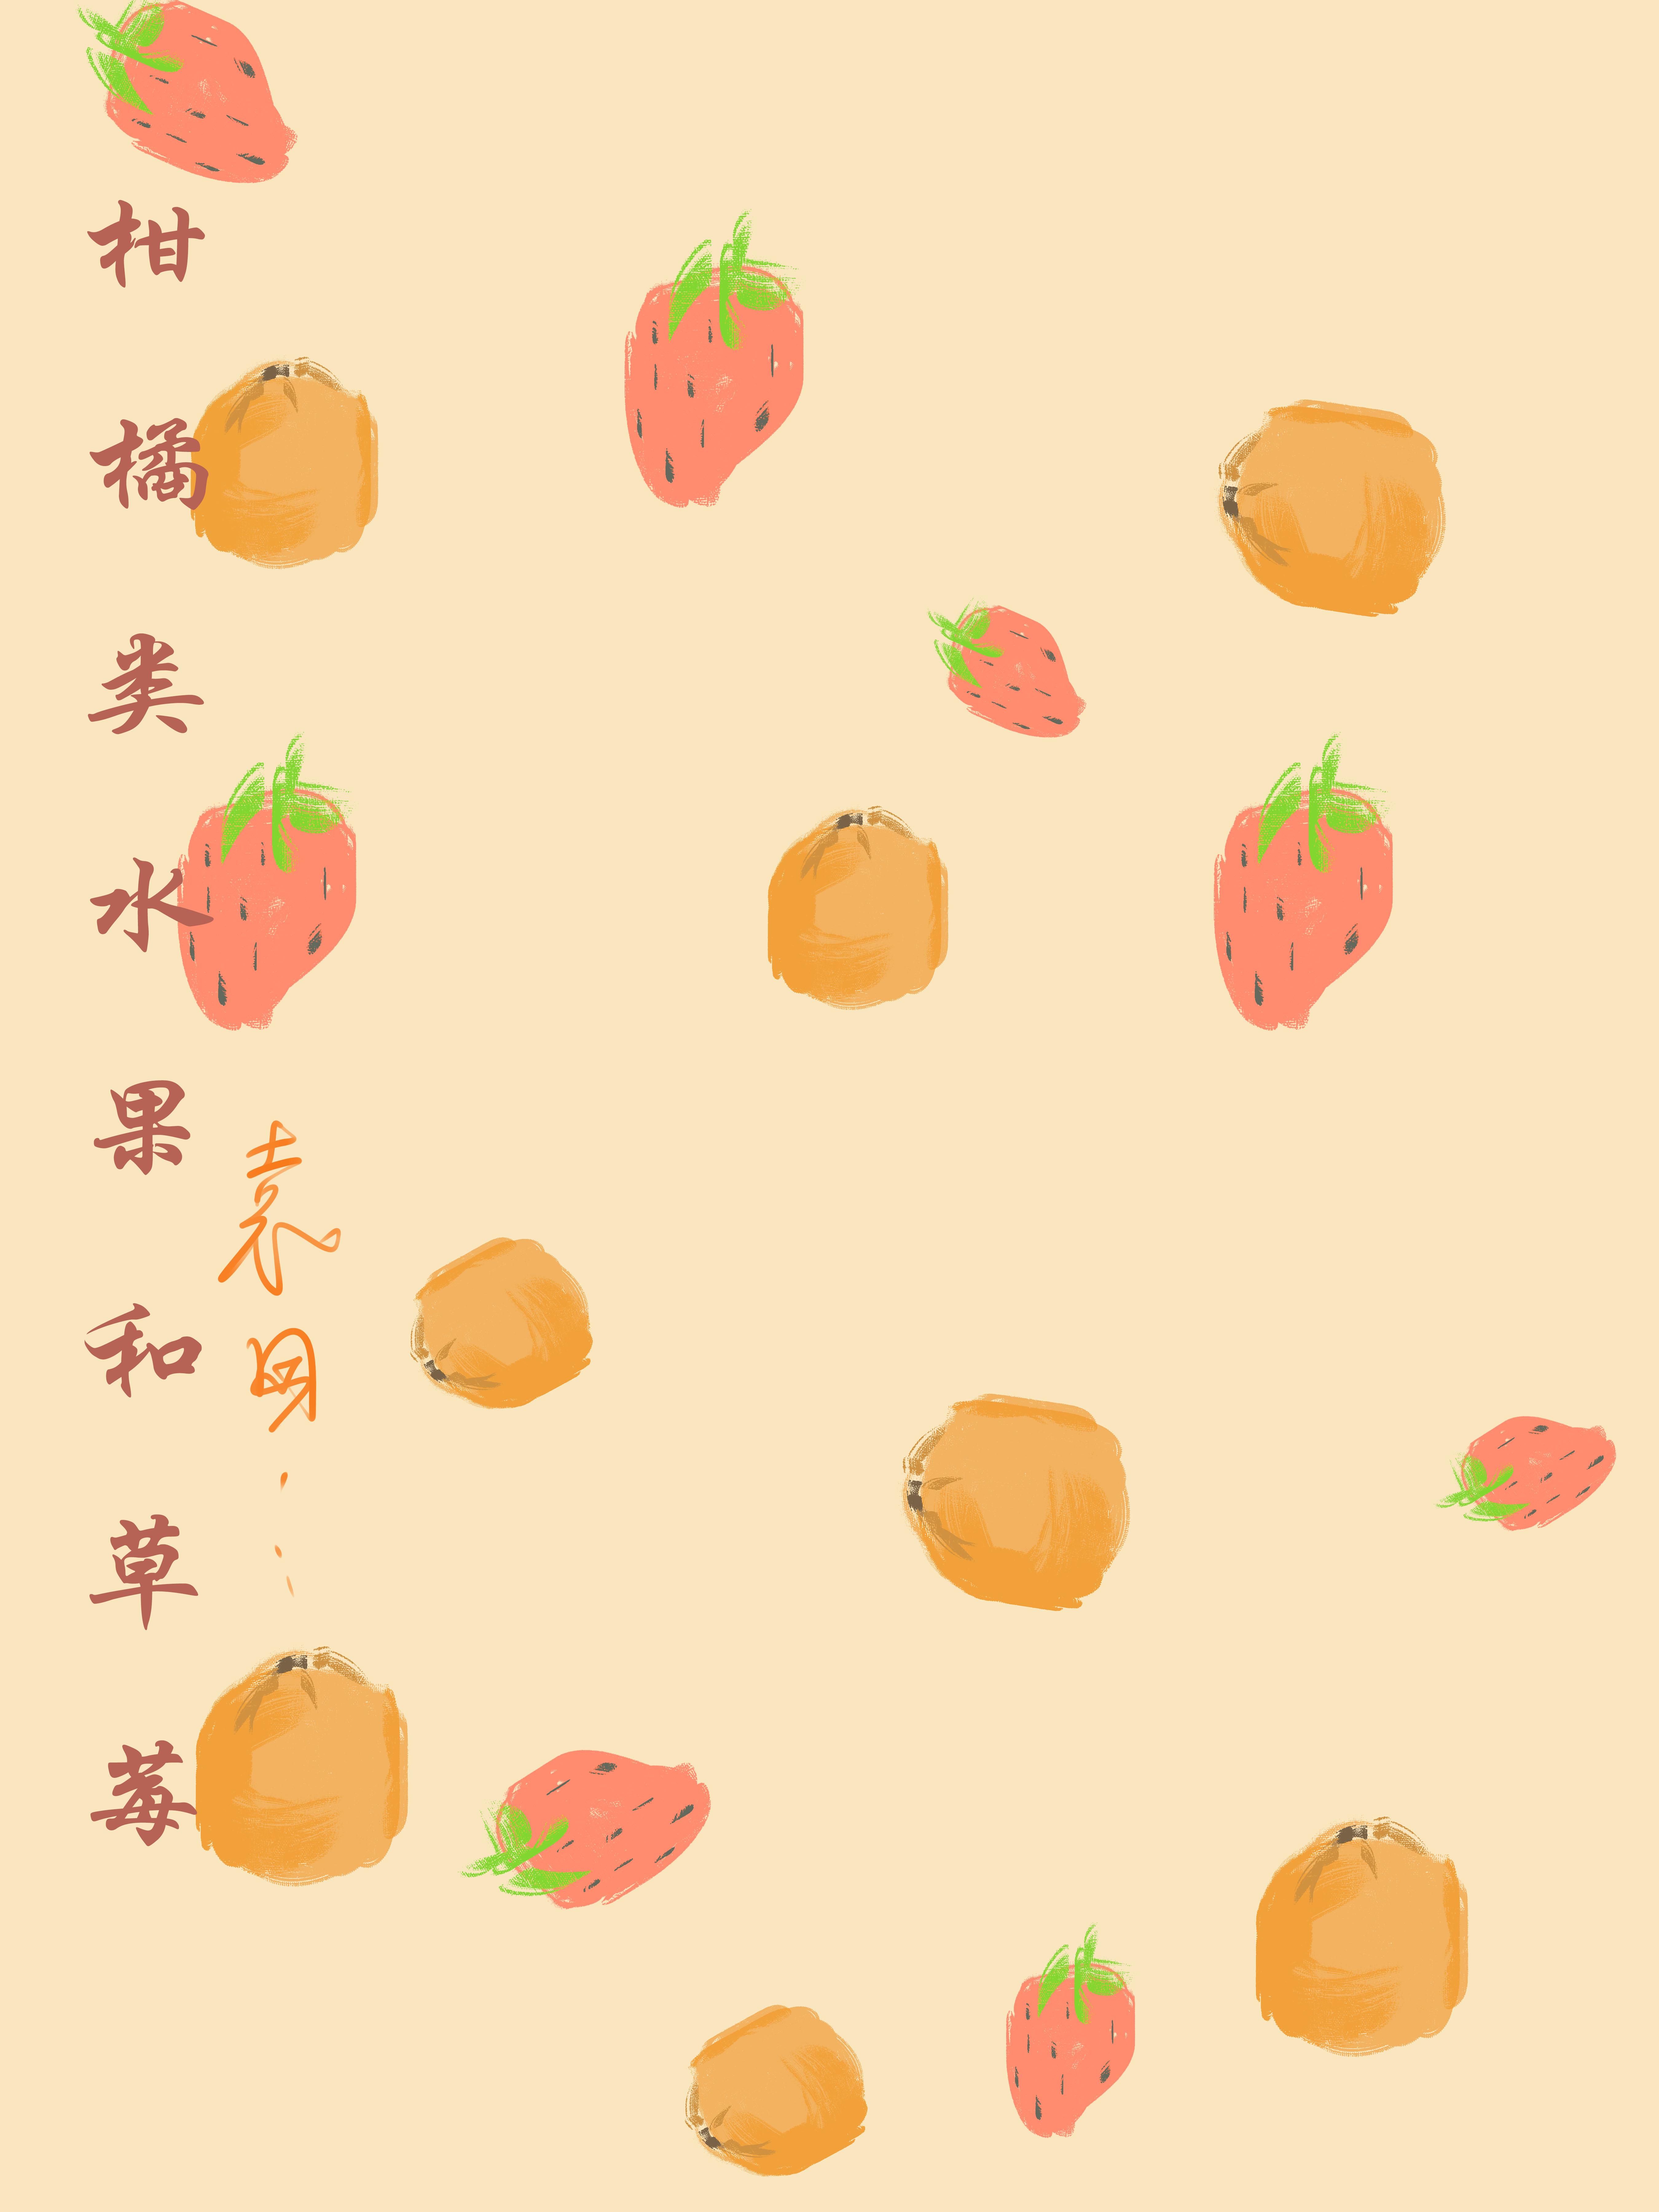 柑橘类水果和草莓